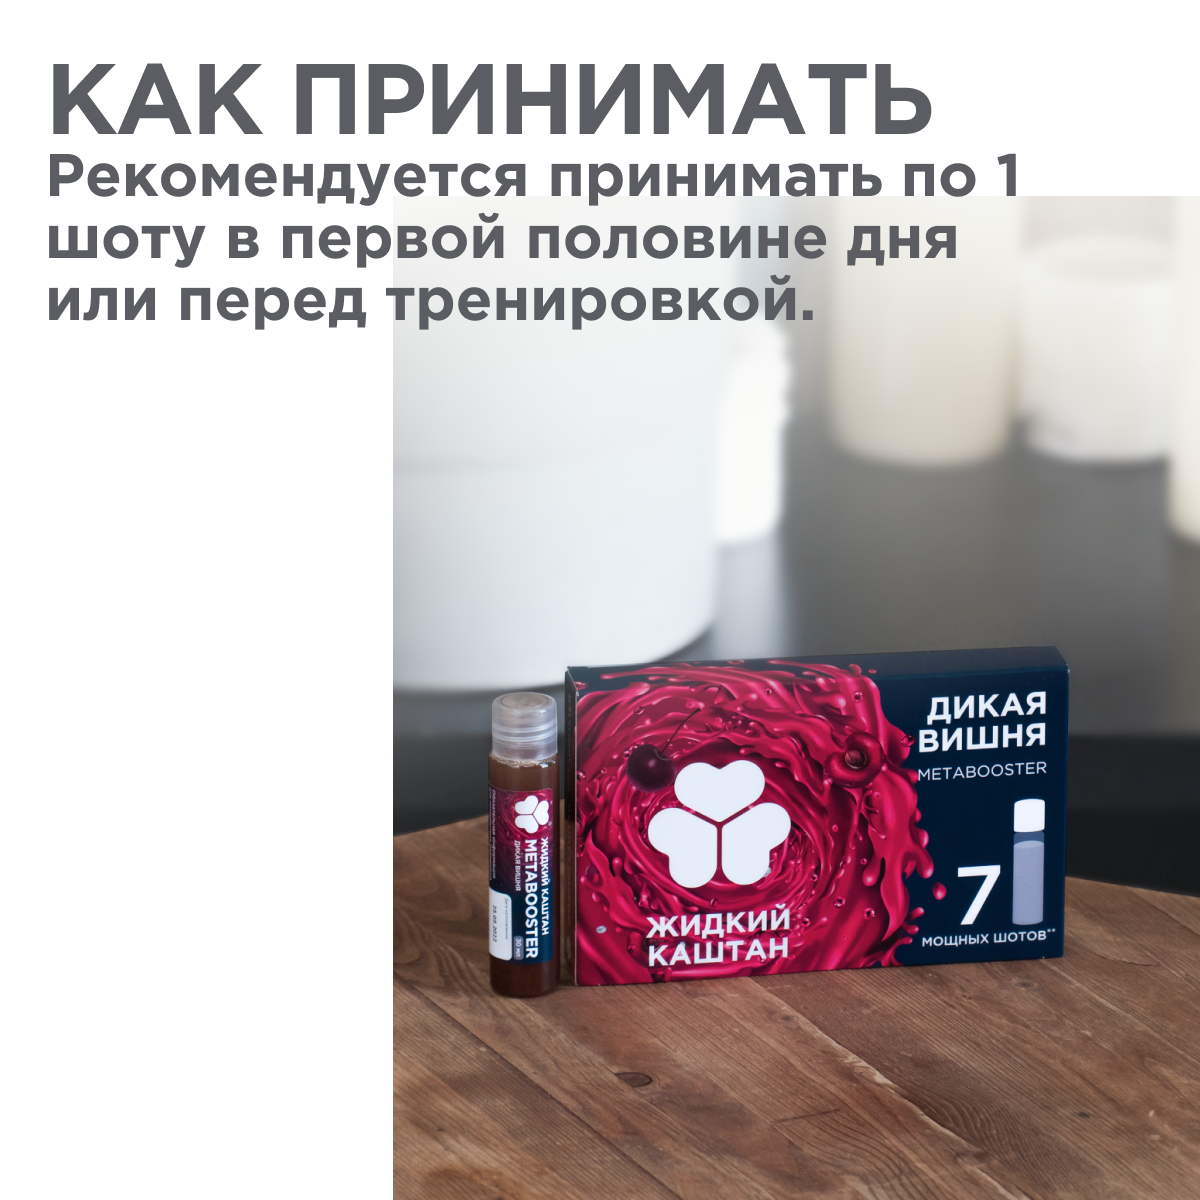 Метабустер Жидкий Каштан натруальный энергетик со вкусом вишни - фото 5